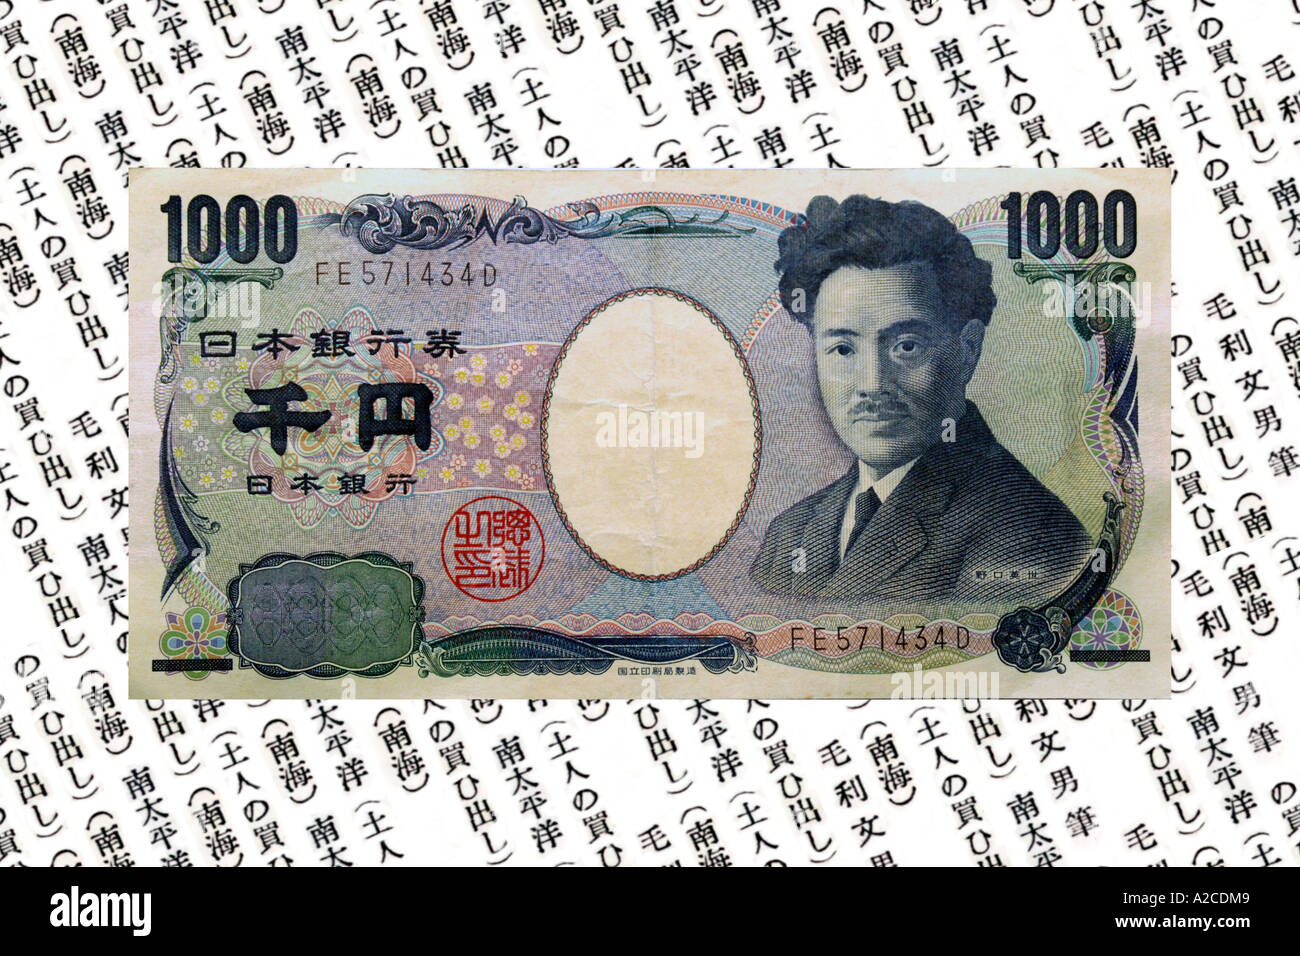 Ein Konzept-Bild von Japan 1000 Yen Hinweis vor dem schriftlichen Hintergrund. Stockfoto